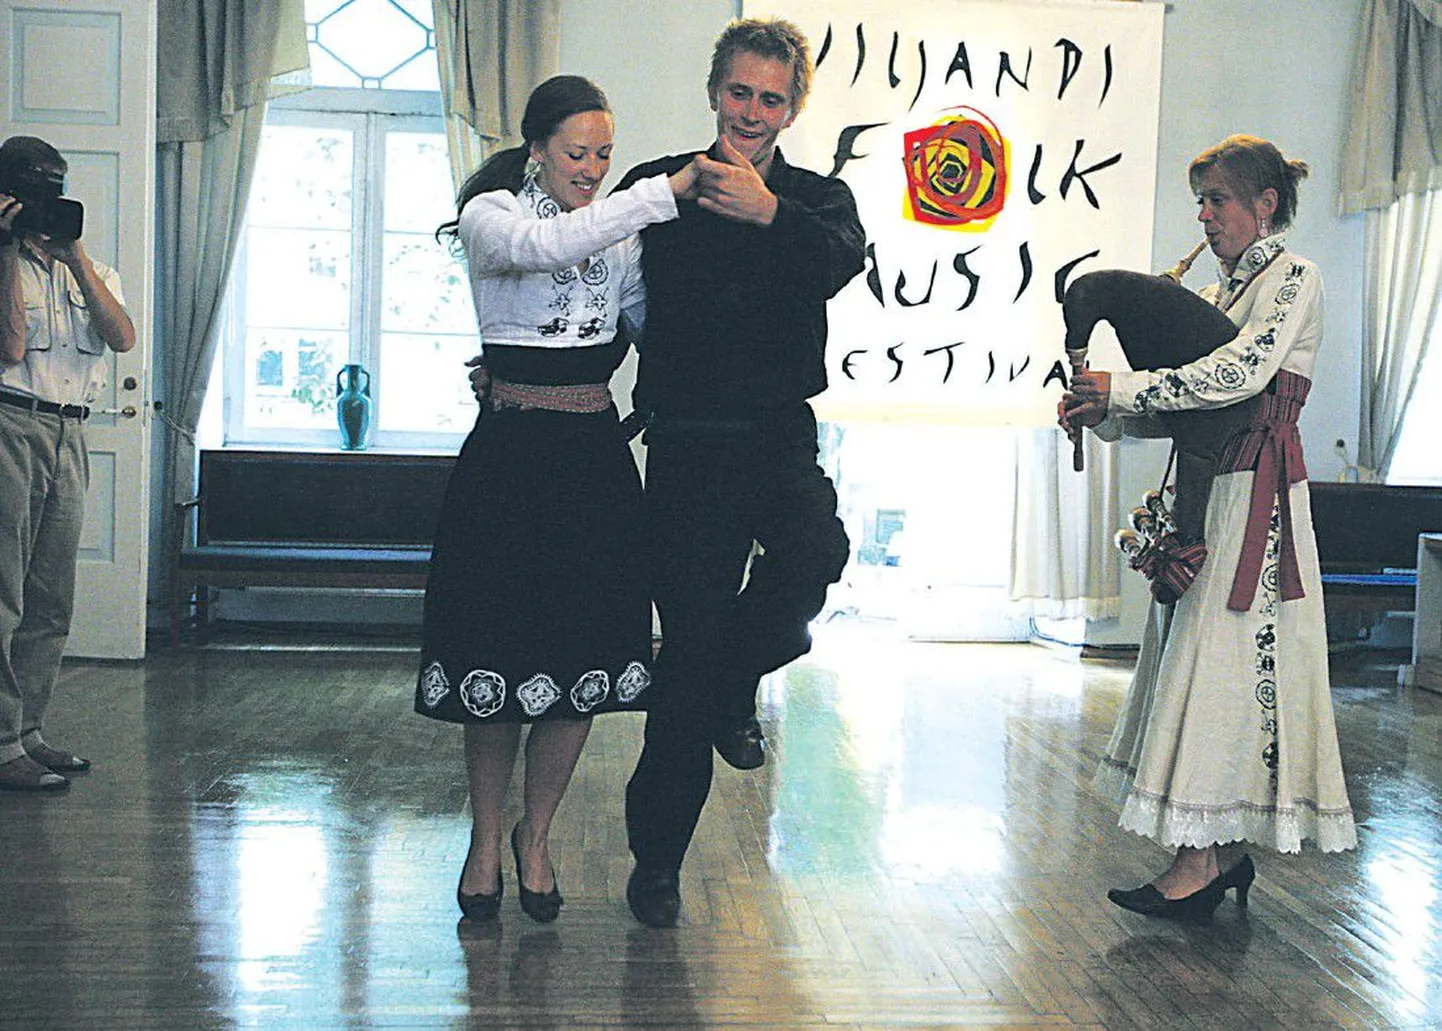 На вчерашней пресс-конференции по поводу фестиваля в Вильянди выступили танцоры и музыканты театра Tantsumasin.